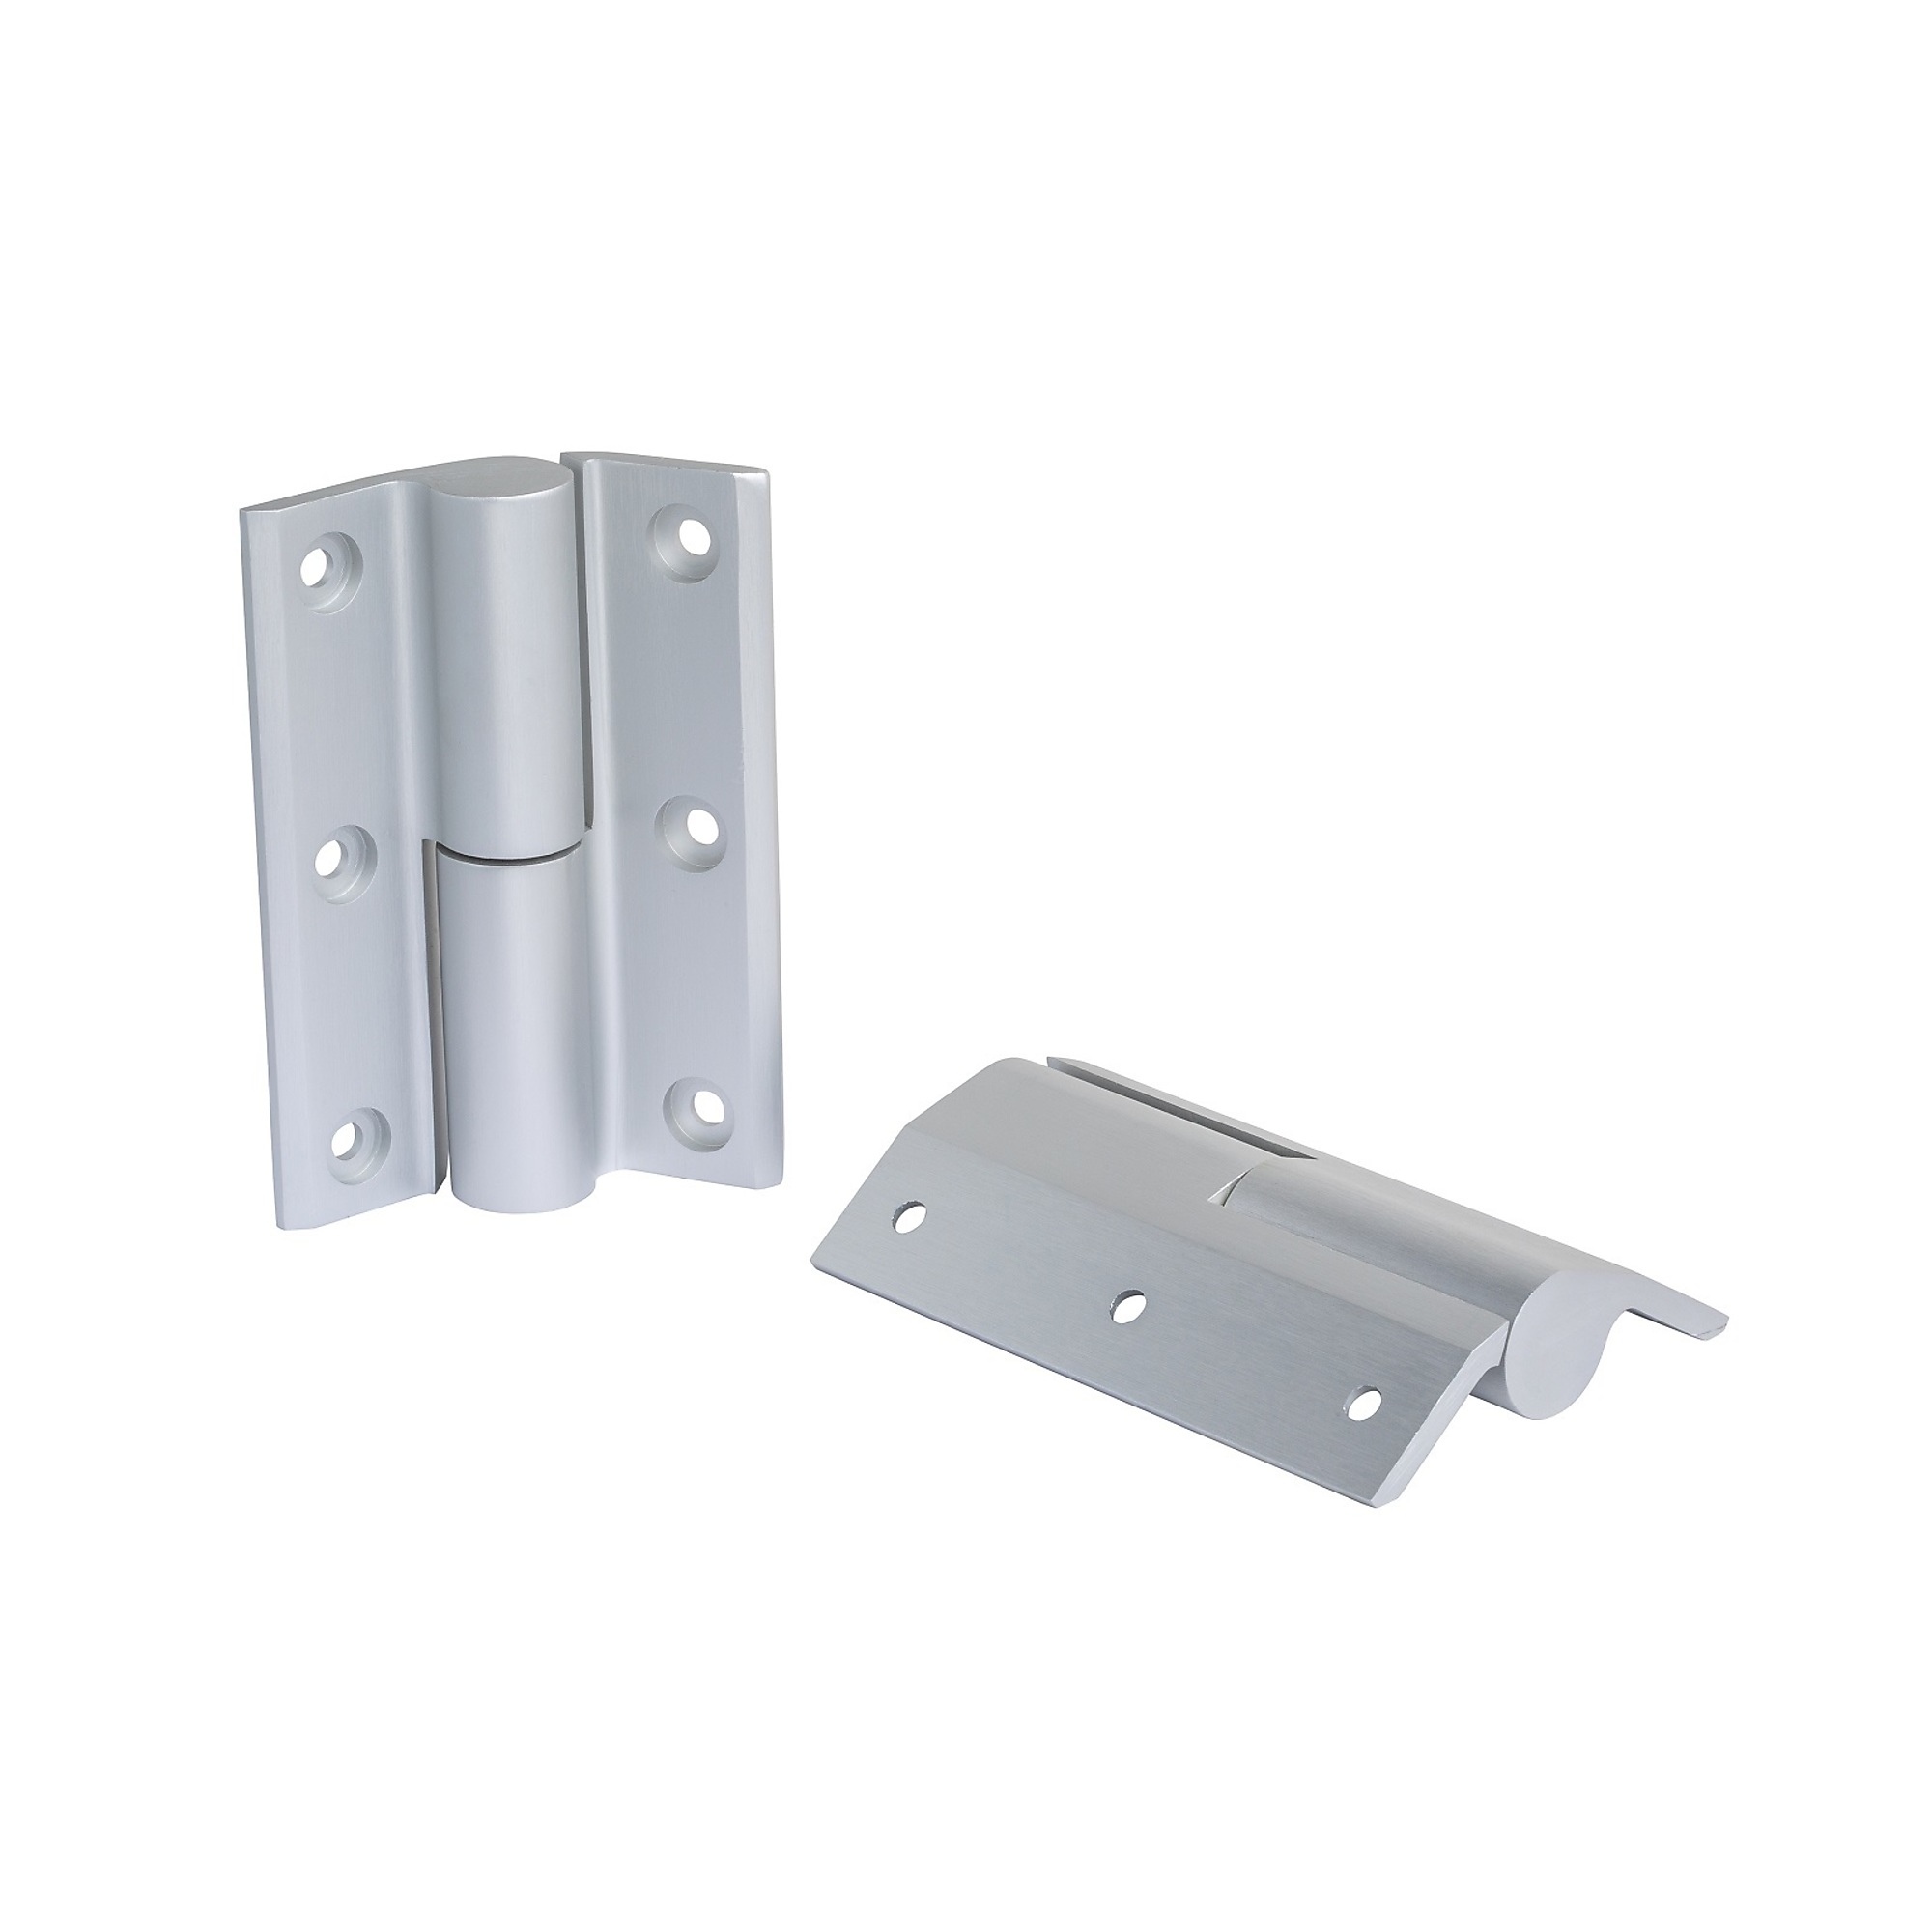 Global Door Controls, Deluxe Storefront Aluminum Door Hinge Kit, Model TH1100-HK1-AL